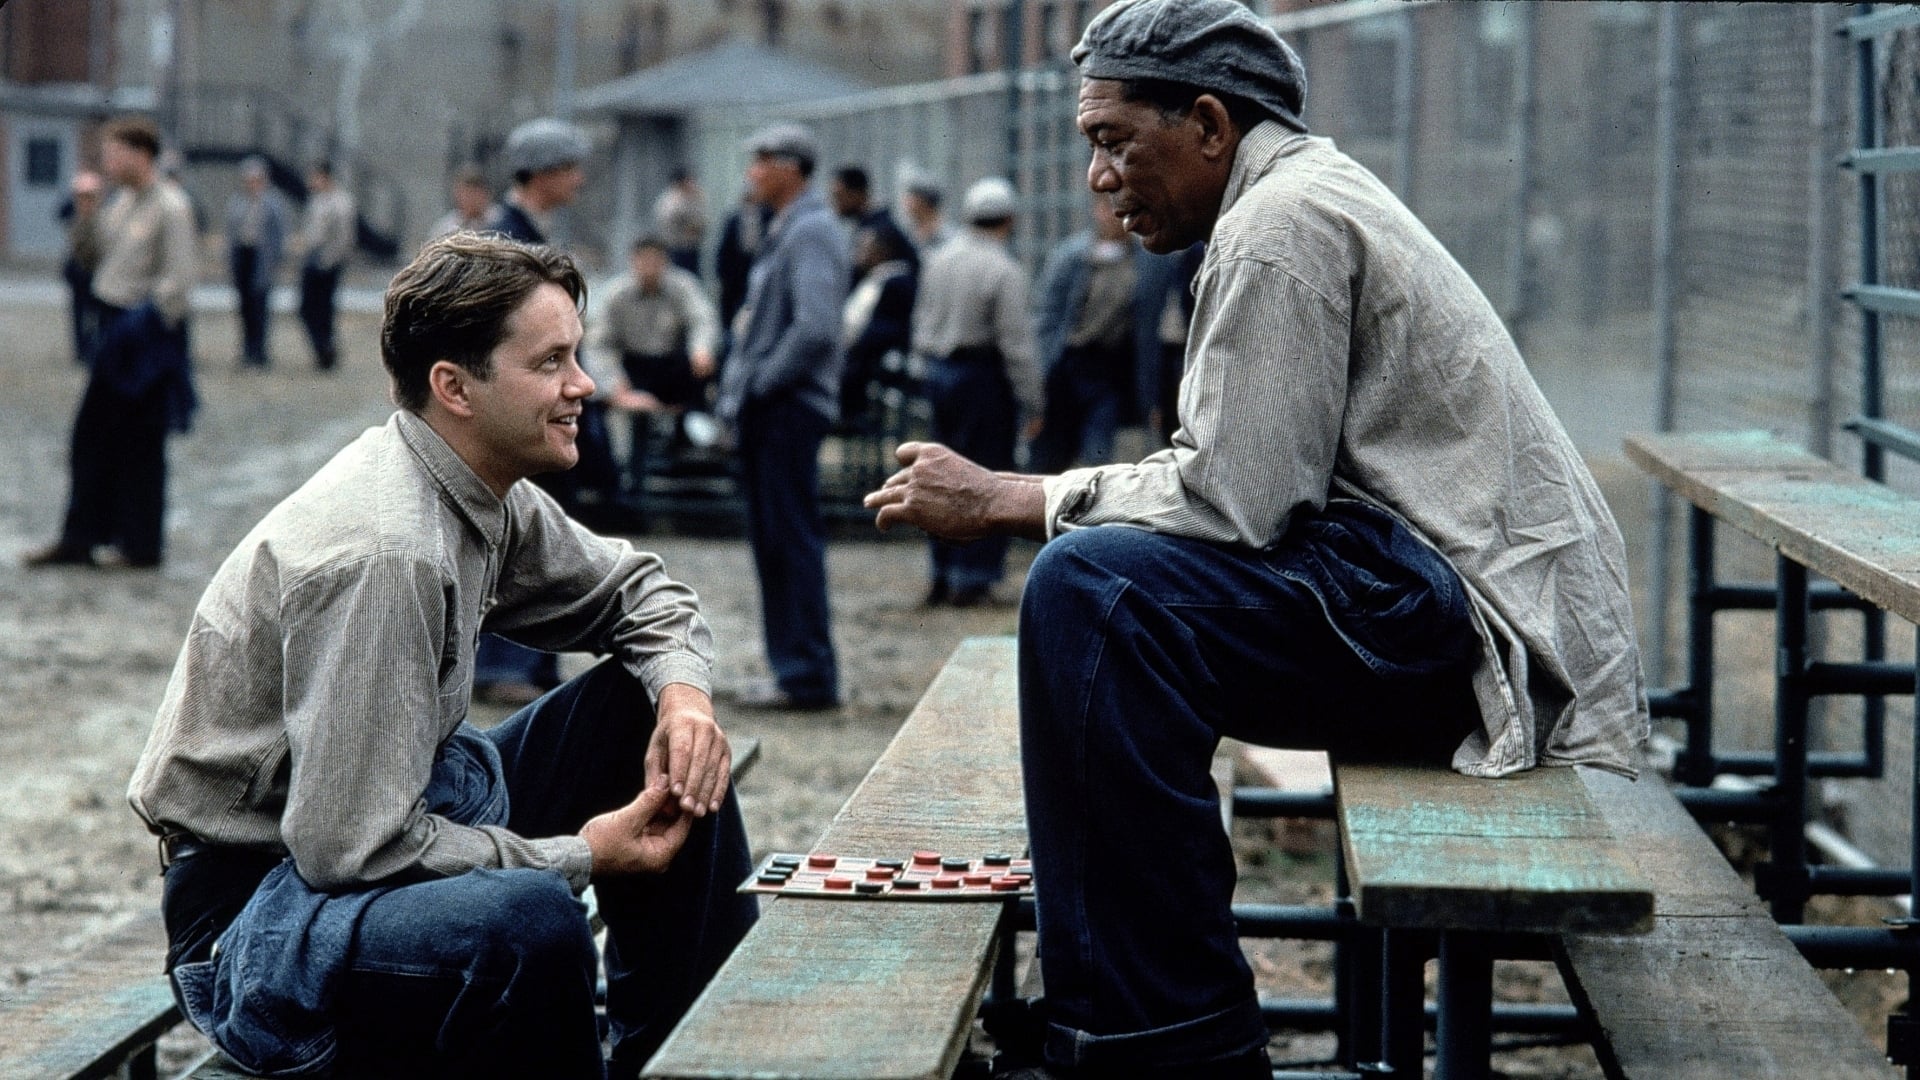 ชอว์แชงค์ มิตรภาพ ความหวัง ความรุนแรง The Shawshank Redemption ออนไลน์โดยสมบูรณ์ในปี 1994